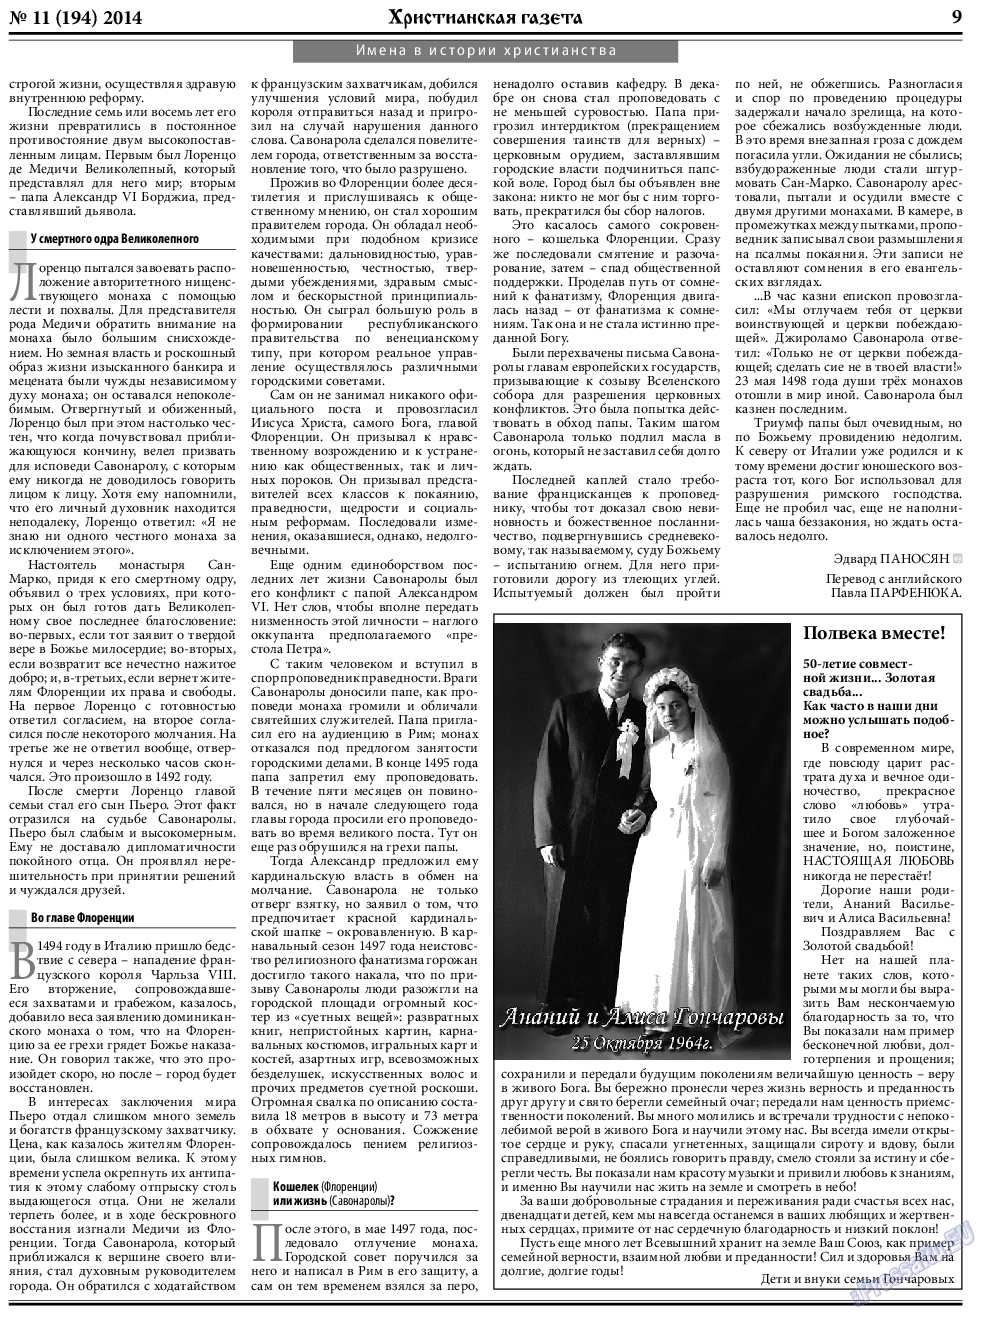 Христианская газета, газета. 2014 №11 стр.9